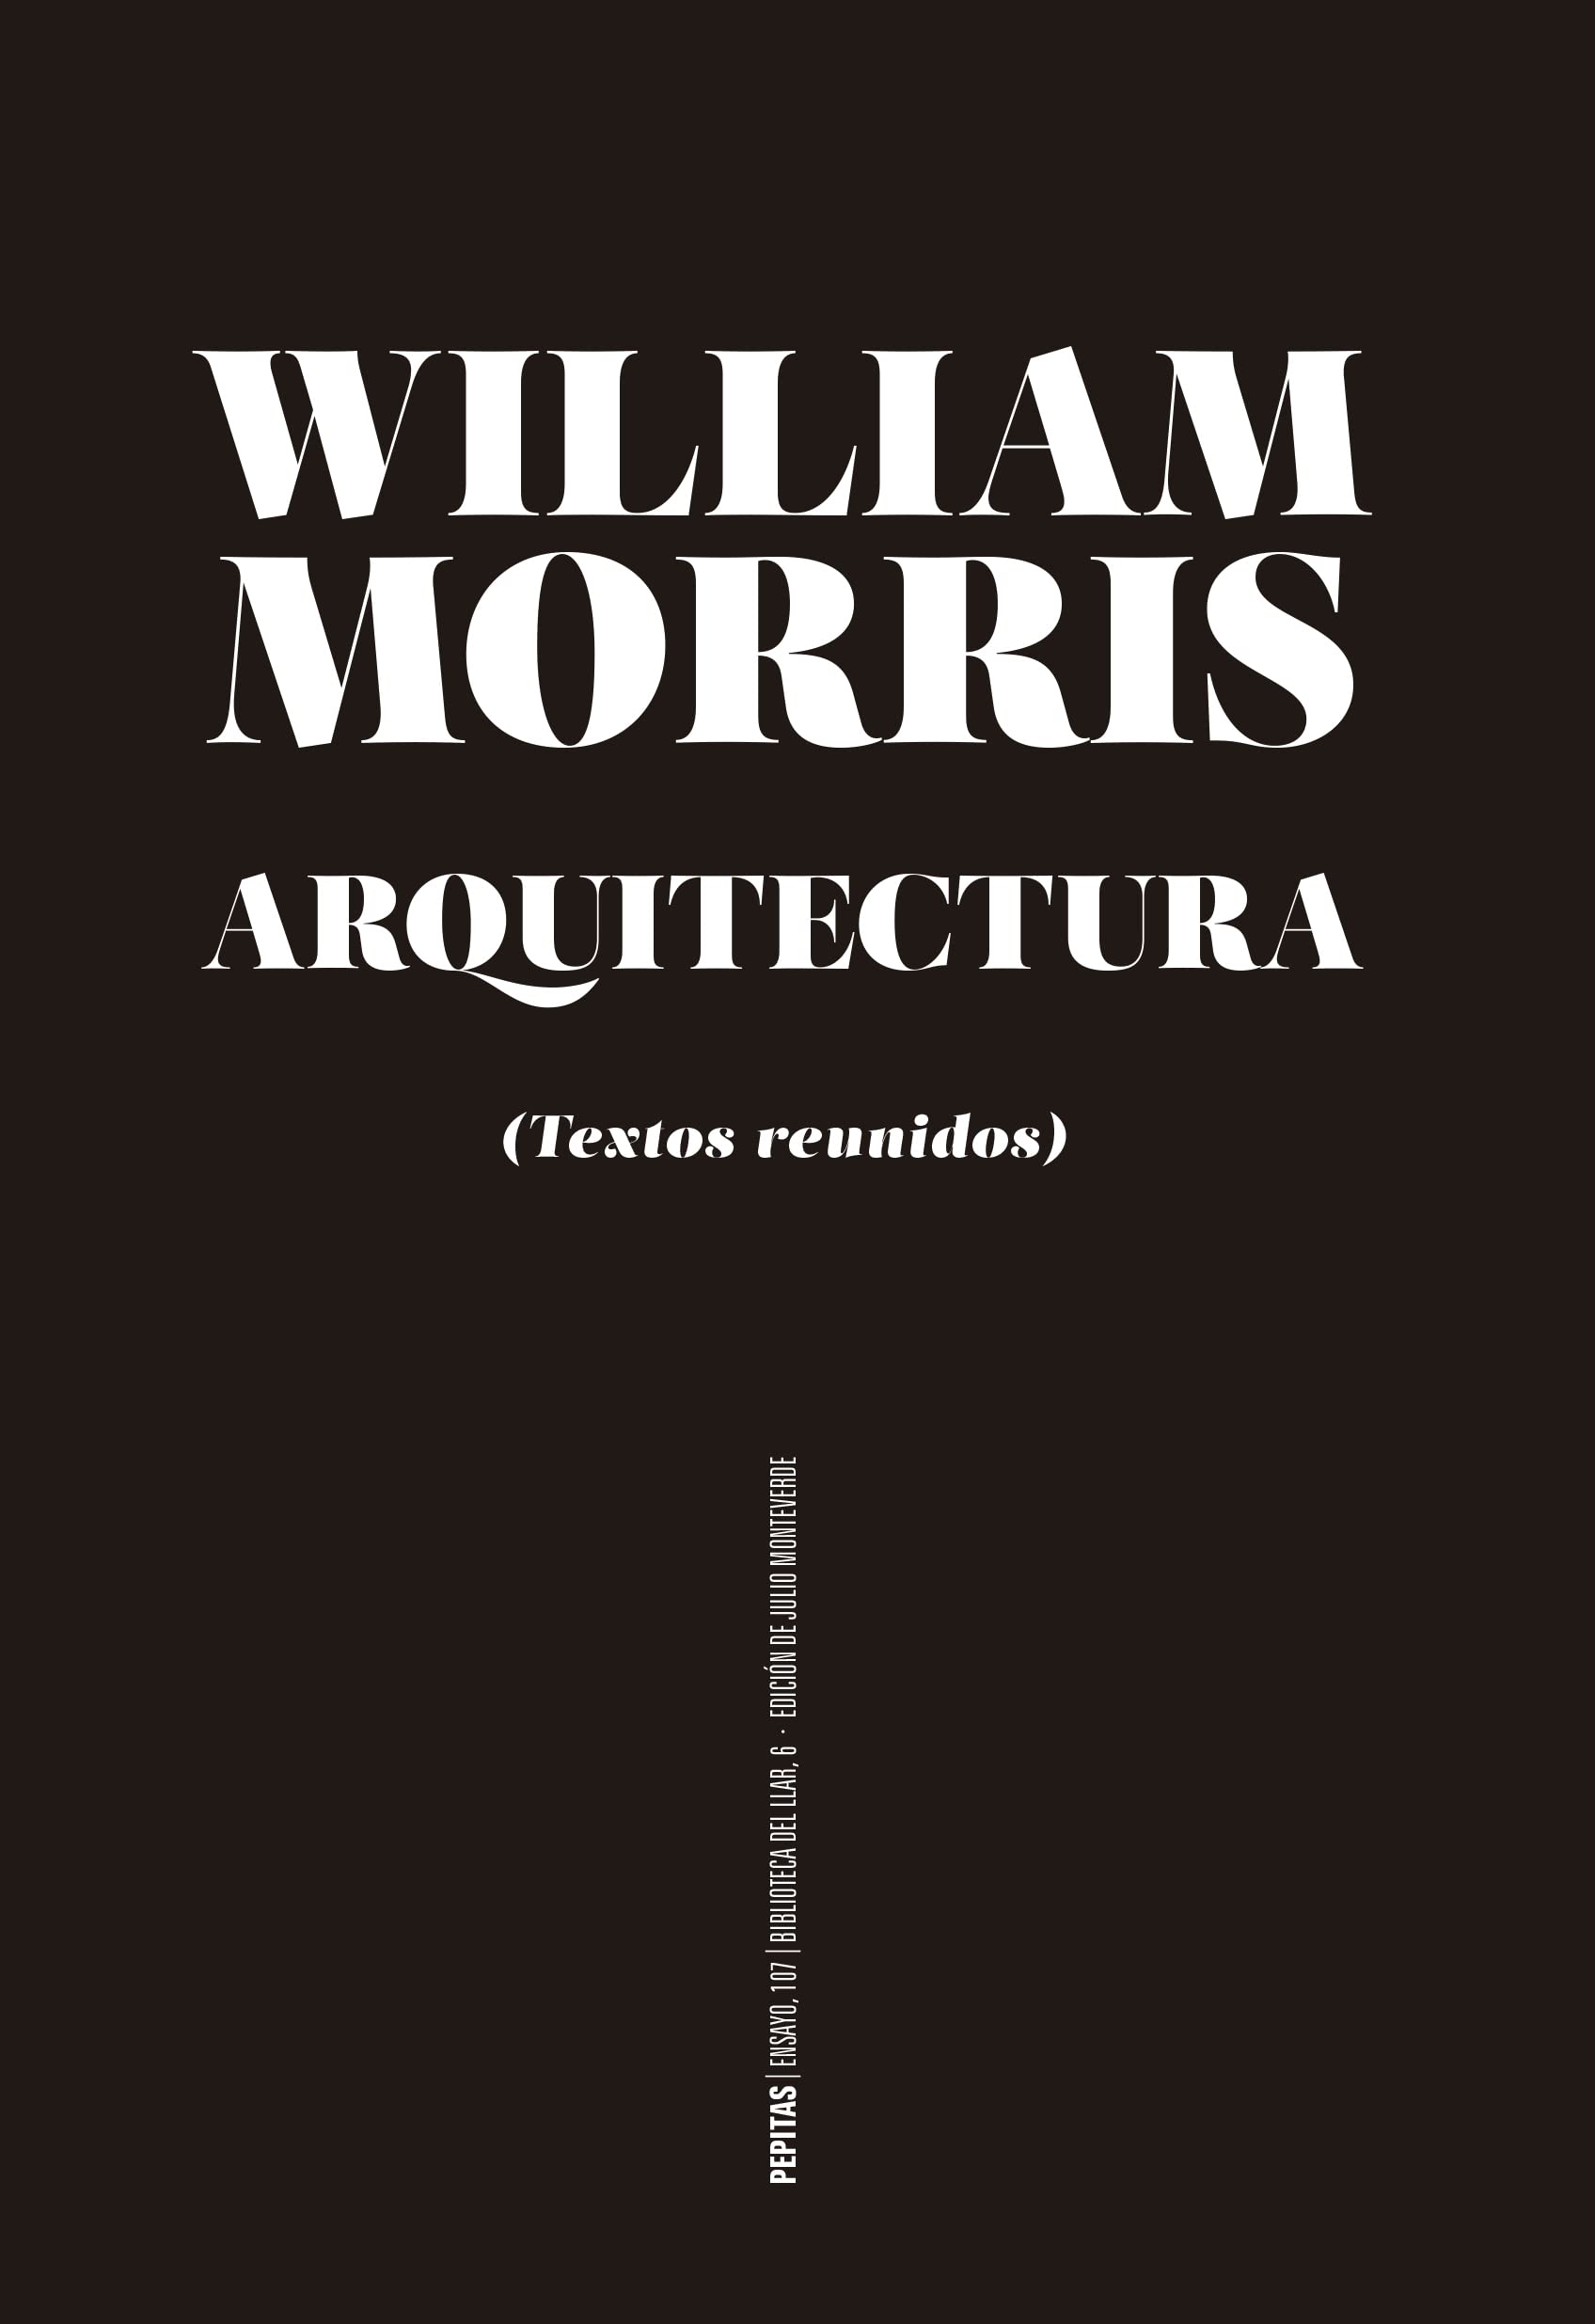 Zenda recomienda: Arquitectura, de William Morris